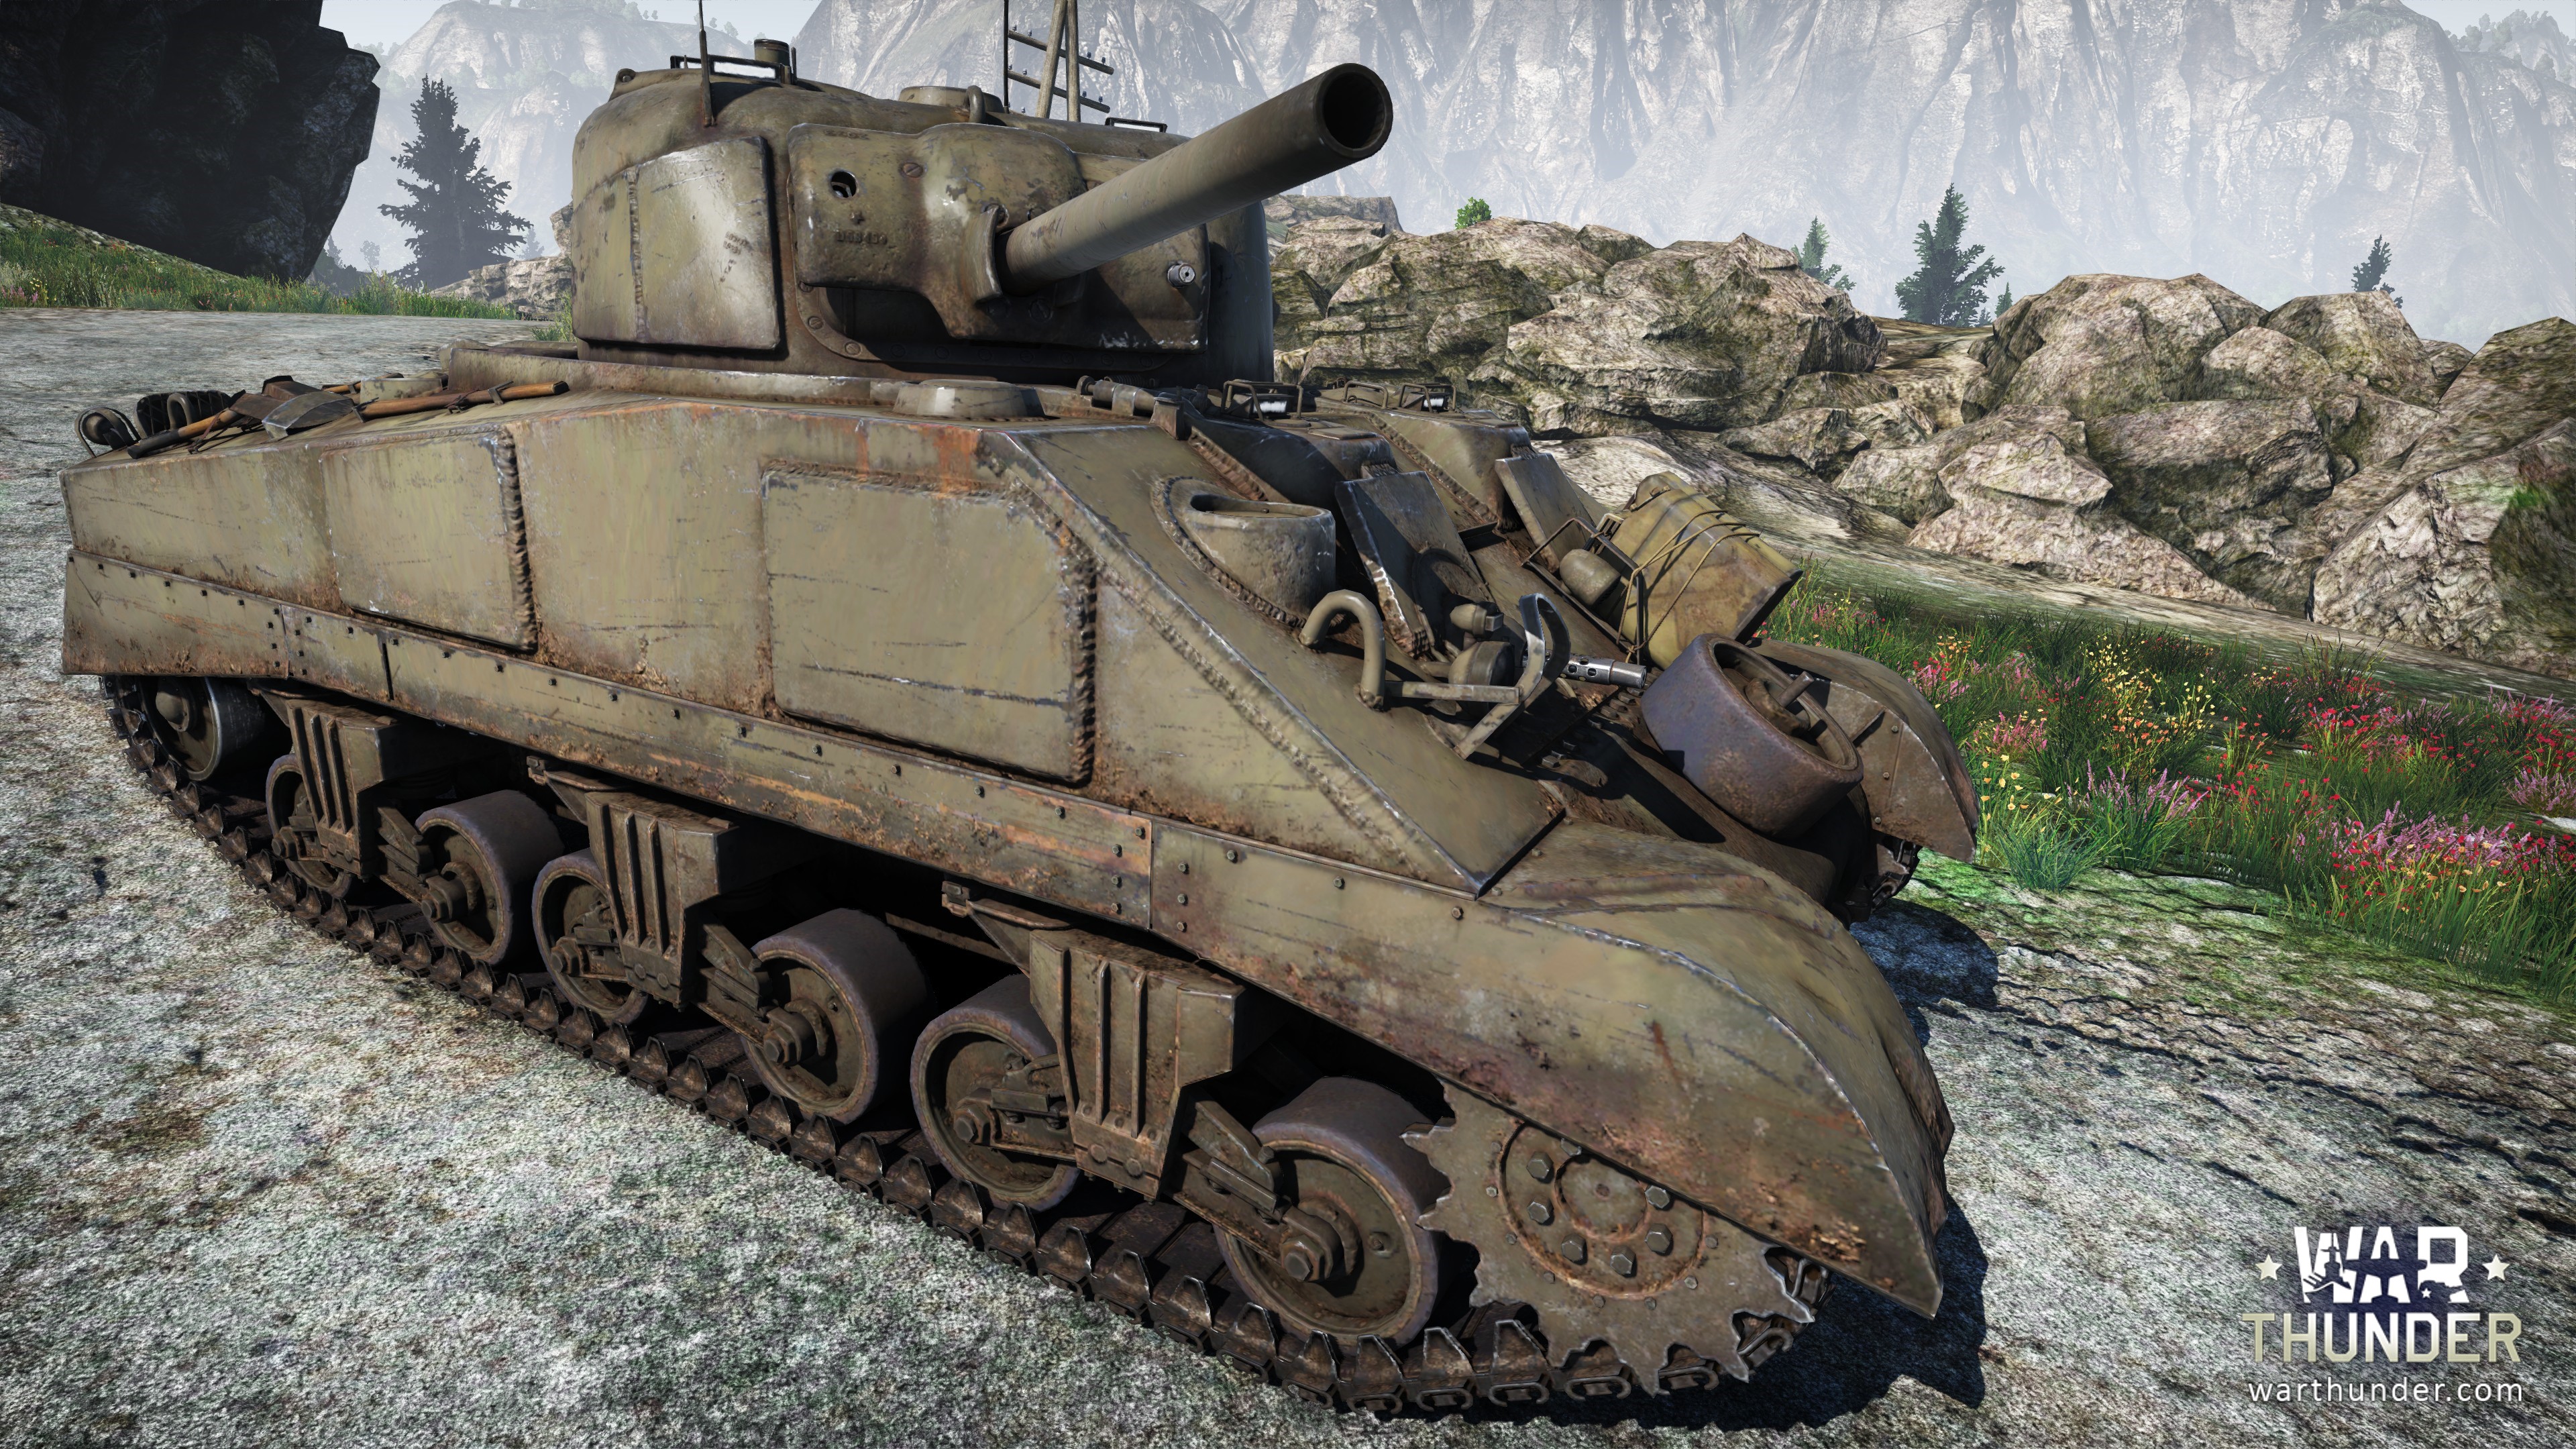 [Development]Steel Generals: M4 Sherman - War Thunder - 3840 x 2160 jpeg 2666kB